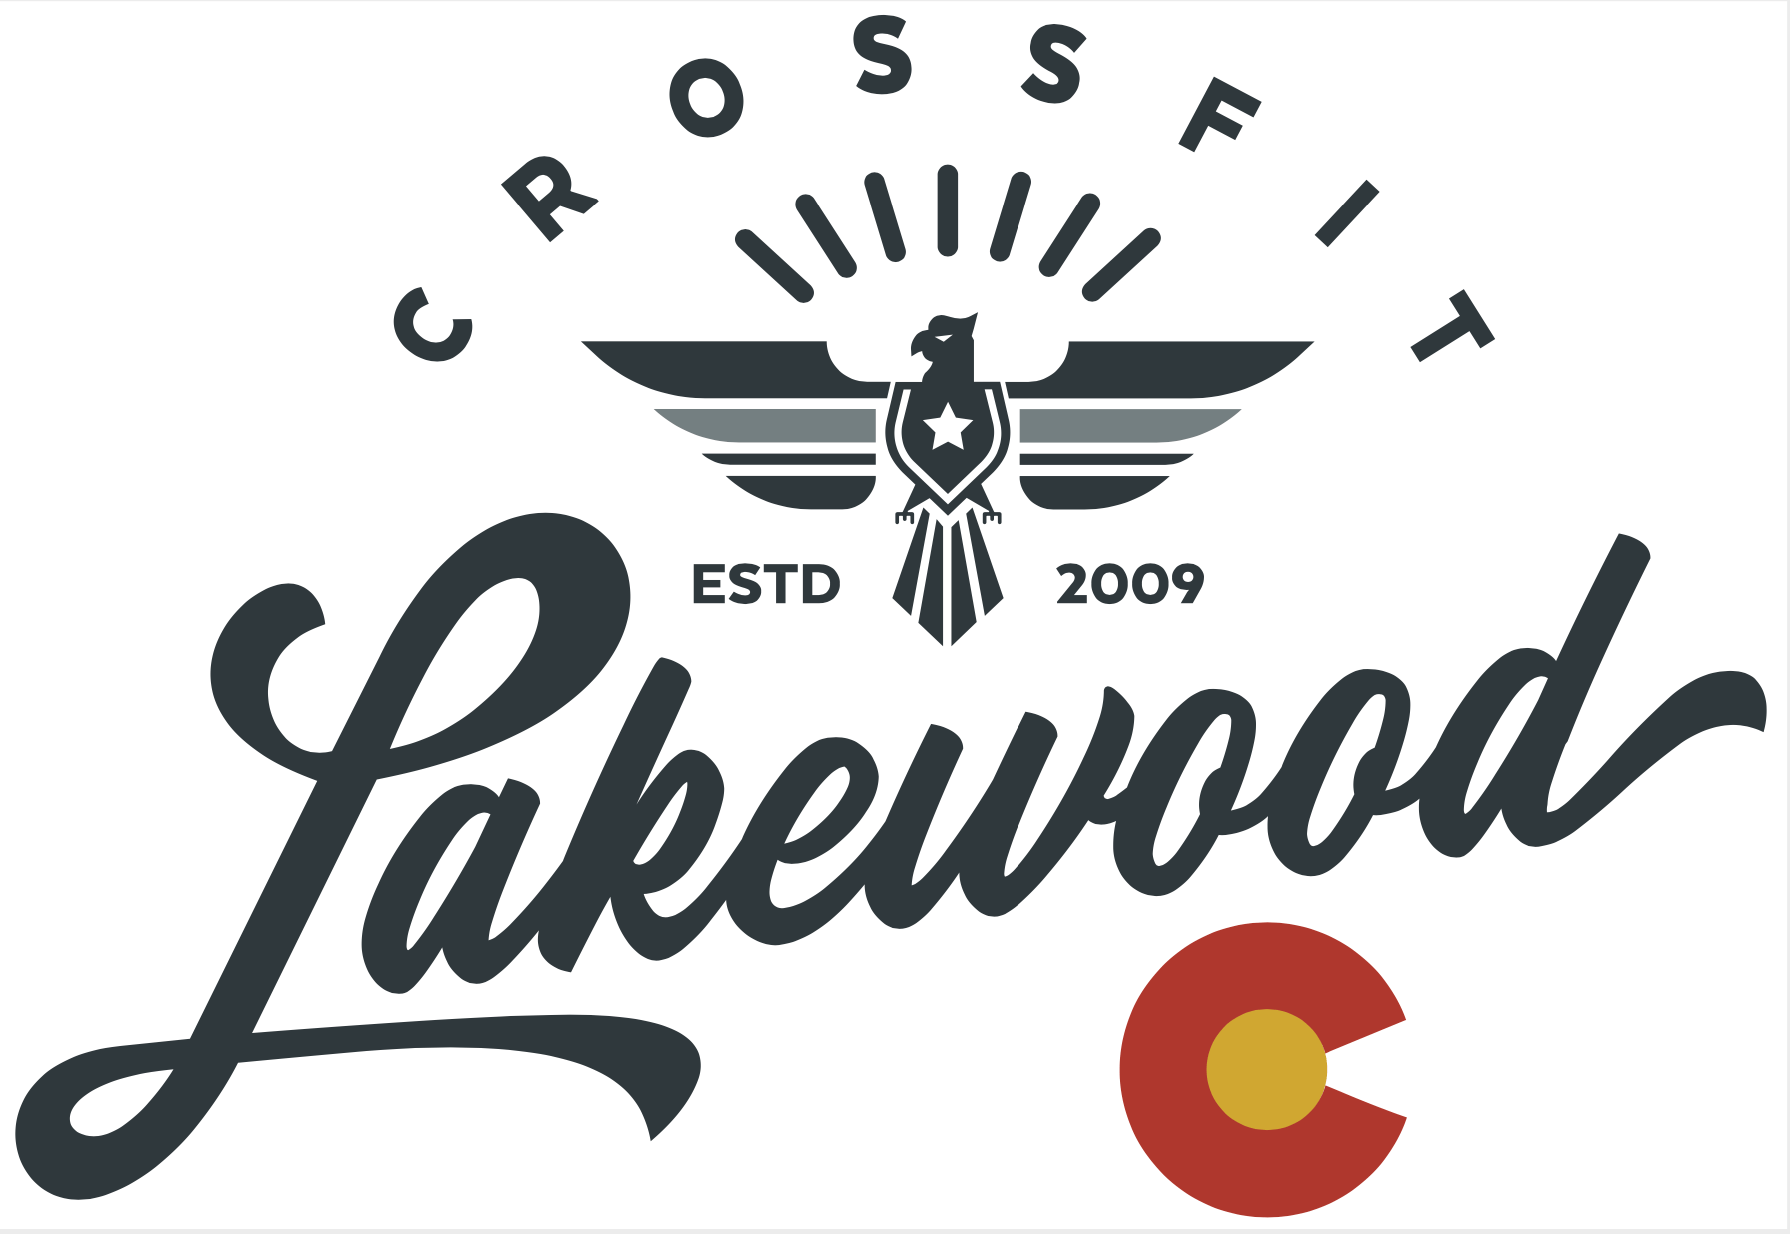 CrossFit Lakewood